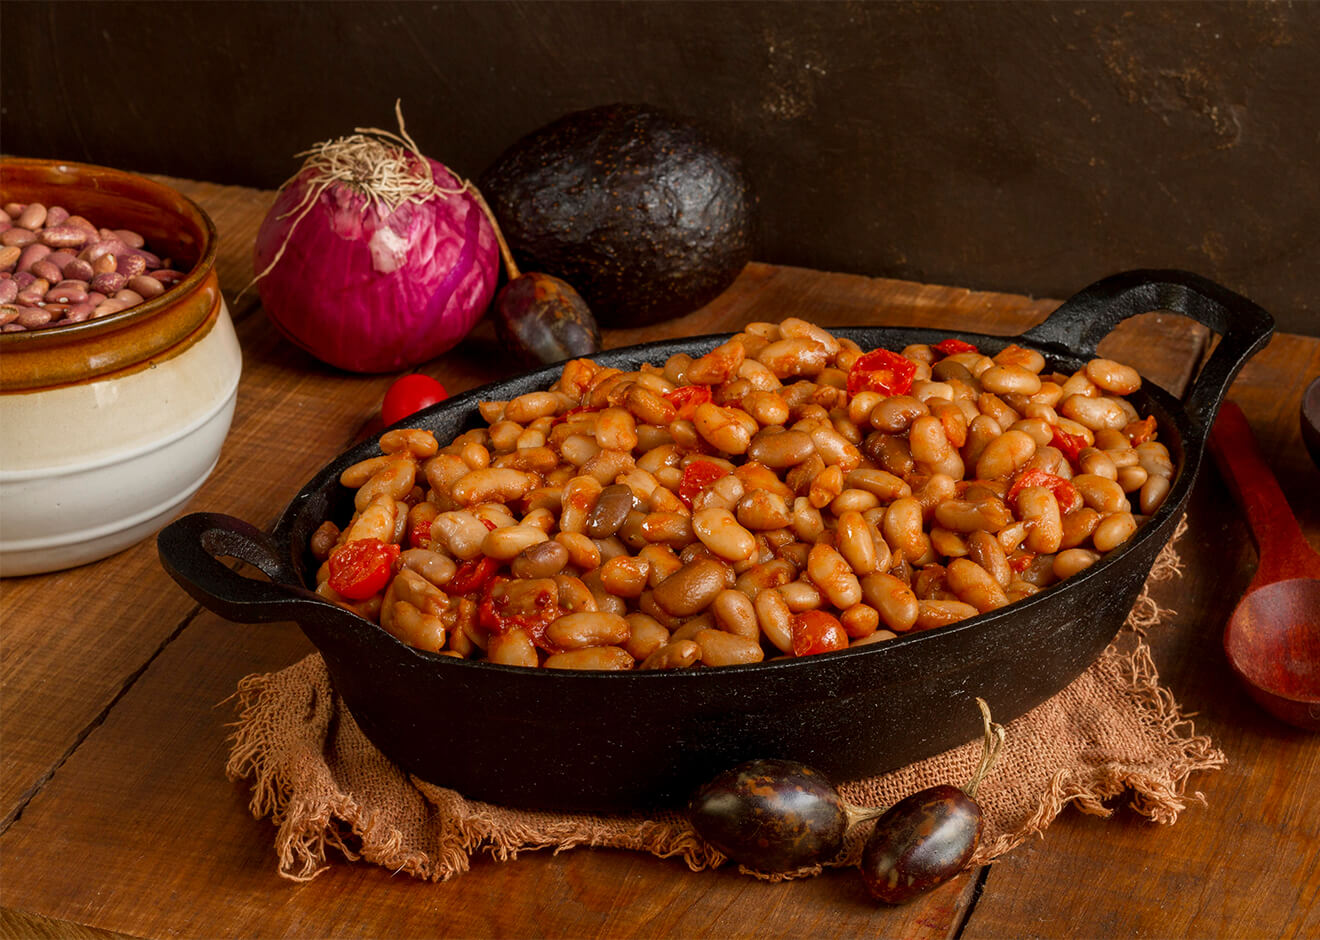 Kuru Fasulye (White Bean Stew) in a metal pan with onion on the table